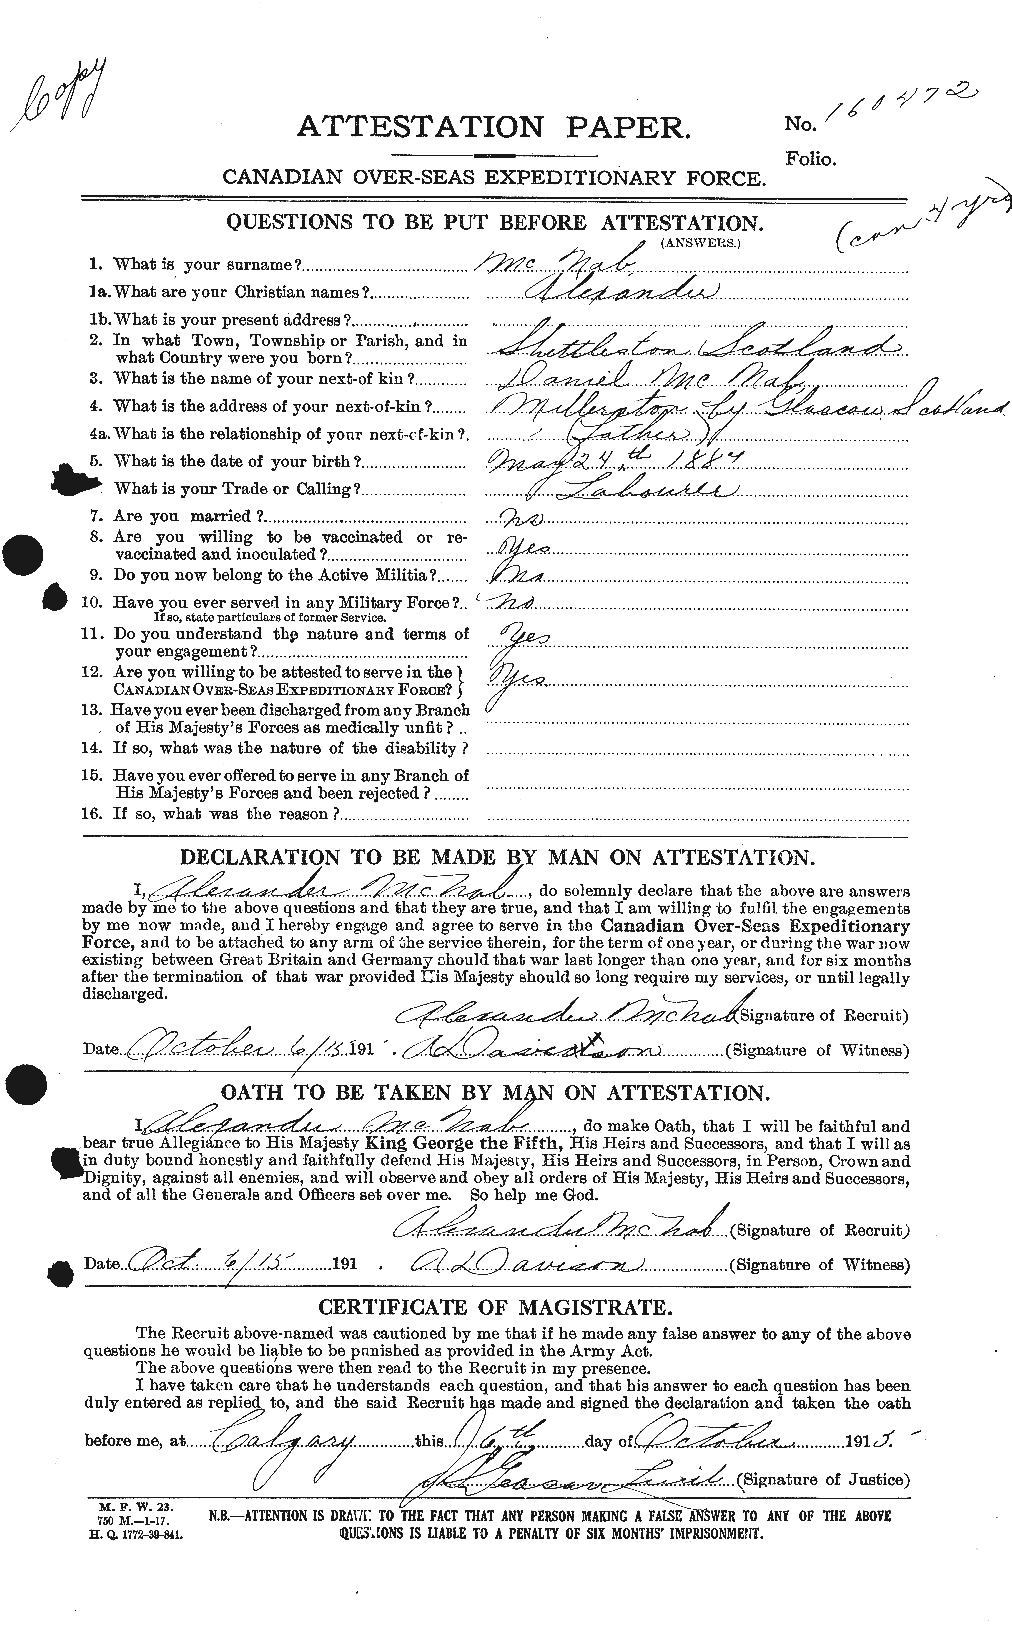 Dossiers du Personnel de la Première Guerre mondiale - CEC 539510a